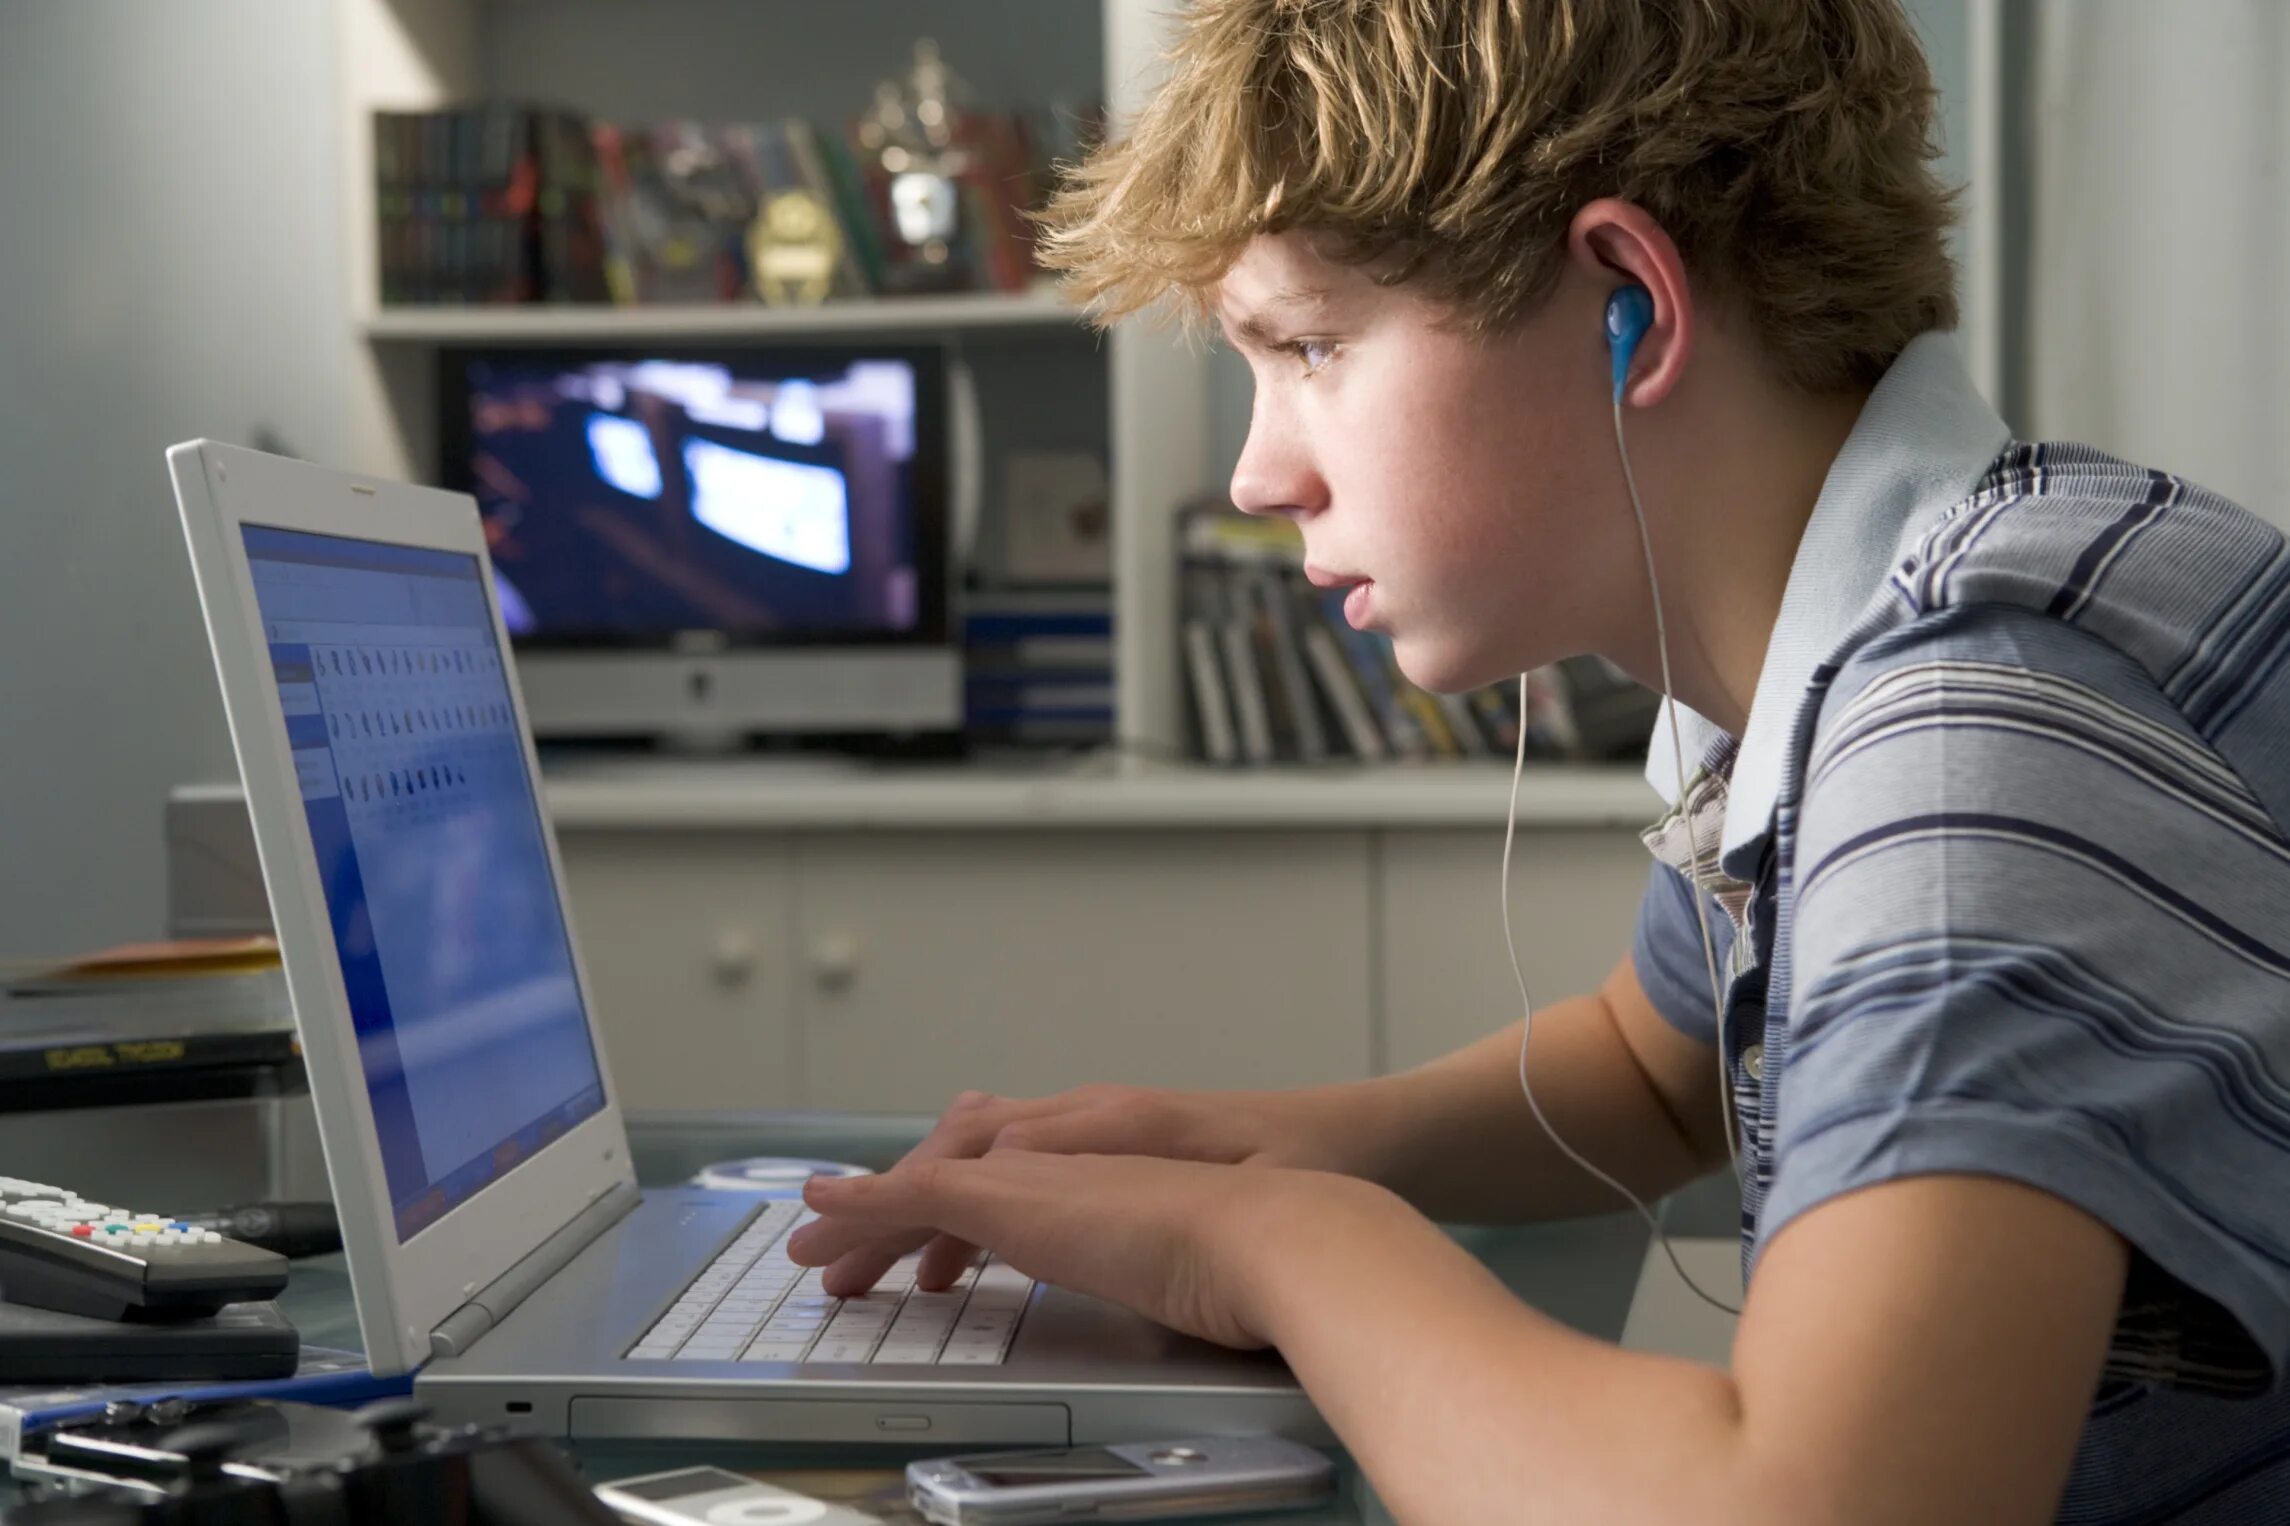 Доступ в интернет в школах. Подросток за компьютером. Подросток и компьютер. Подросток играющий в компьютер. Подросток и компьютерная зависимость.